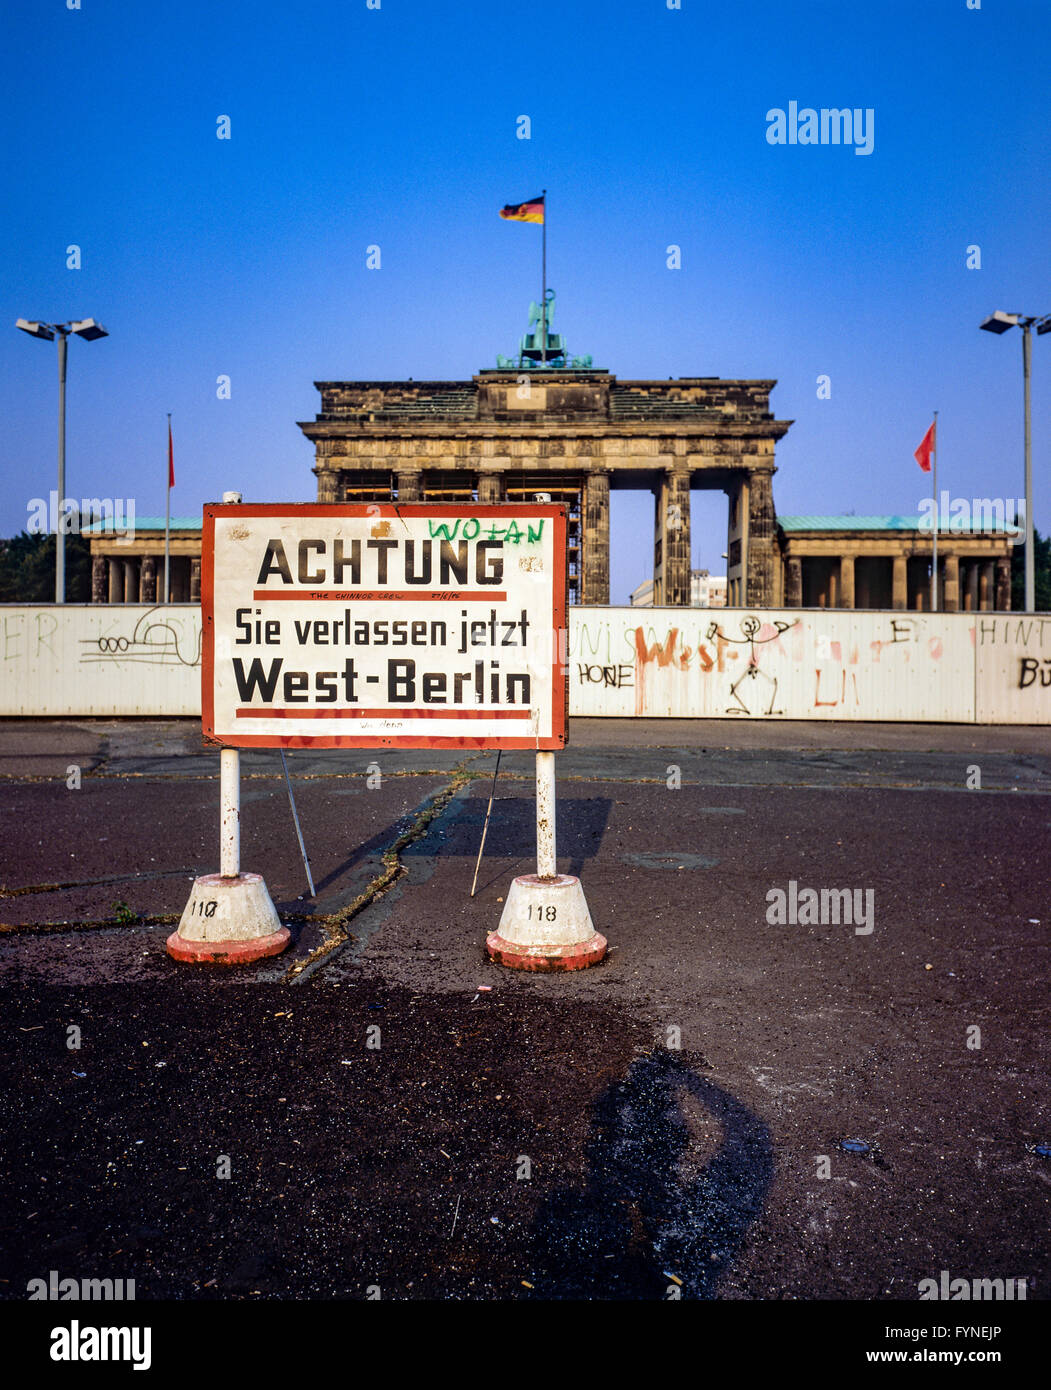 August 1986, West-berlin Warnschild vor der Berliner Mauer, das Brandenburger  Tor in Berlin Ost, West Berlin, Deutschland, Europa Stockfotografie - Alamy